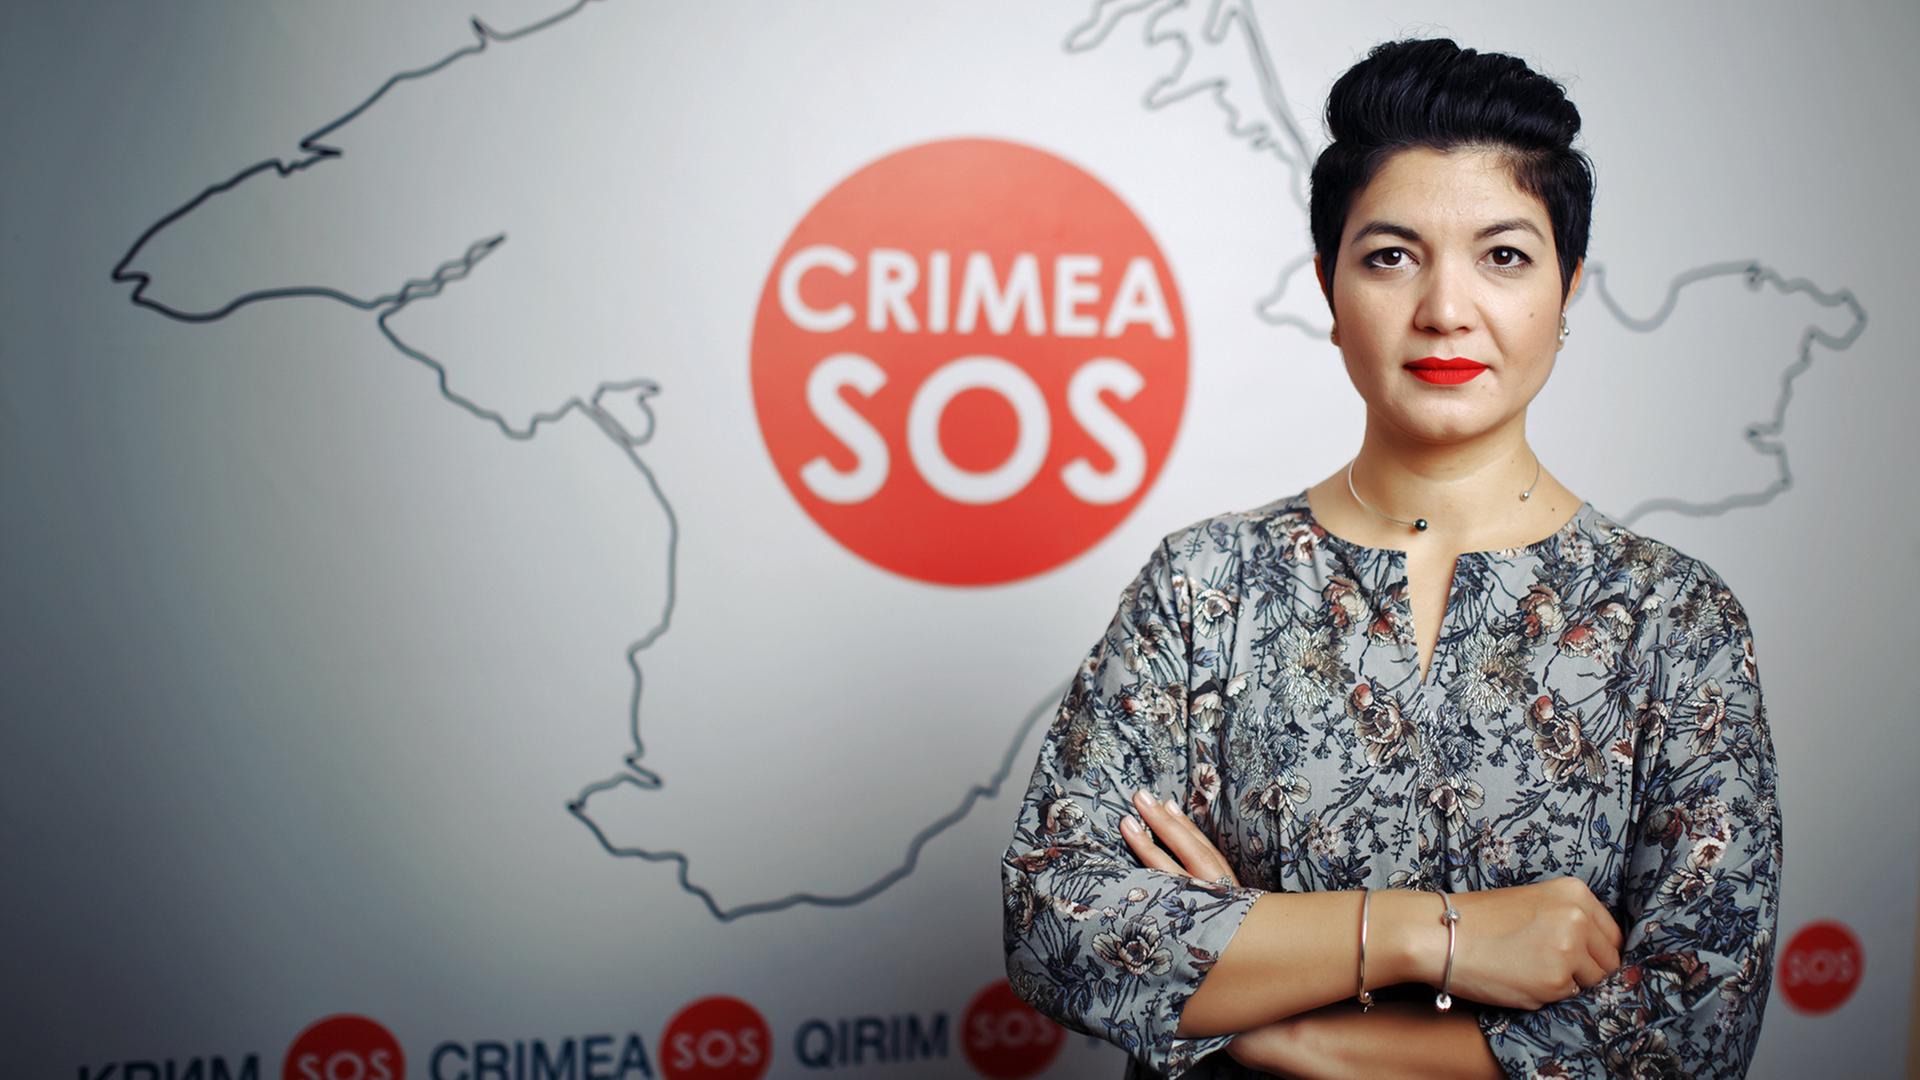 Tamila Tasheva engagiert sich mit ihrer Organisation "Krym SOS", "SOS Krim", gegen Menschenrechtsverstöße auf der Krim.